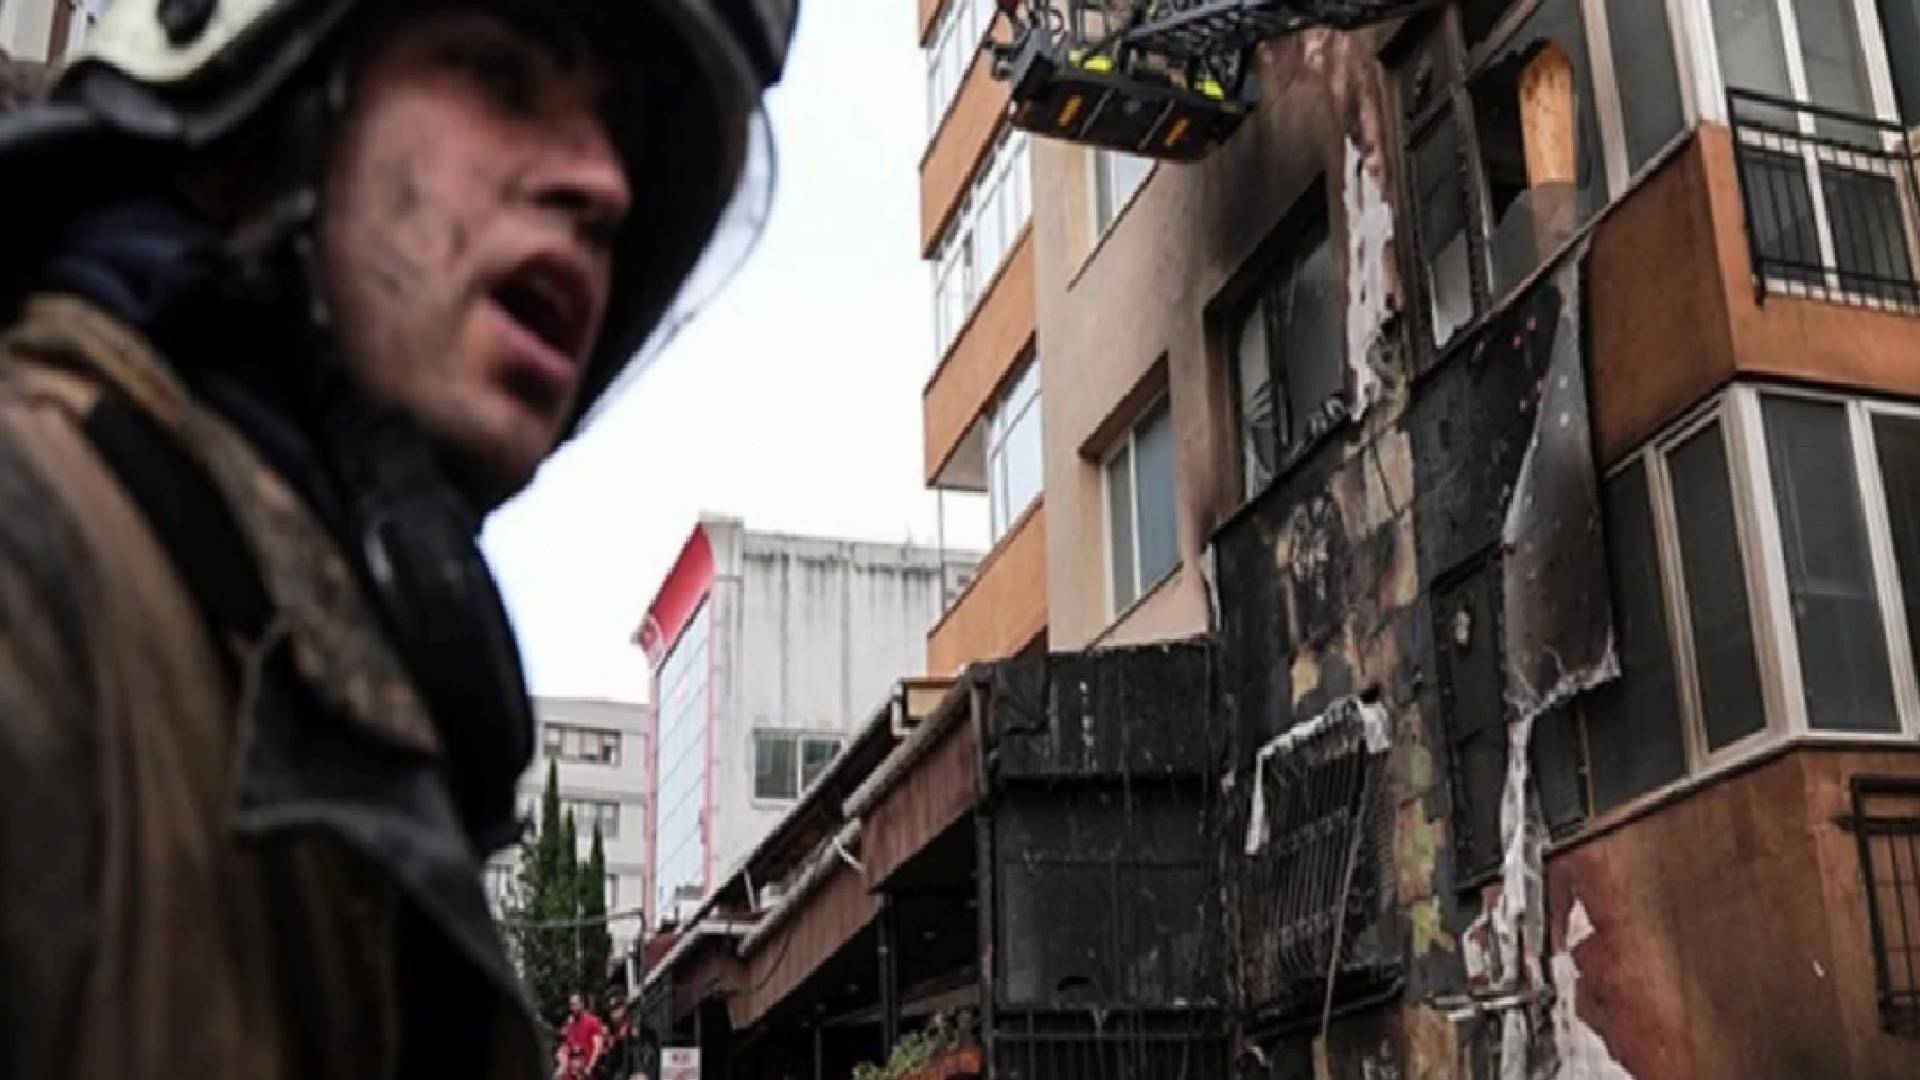 İstanbul Gayrettepe'de gece kulübündeki yangında 29 işçi yaşamını kaybetti